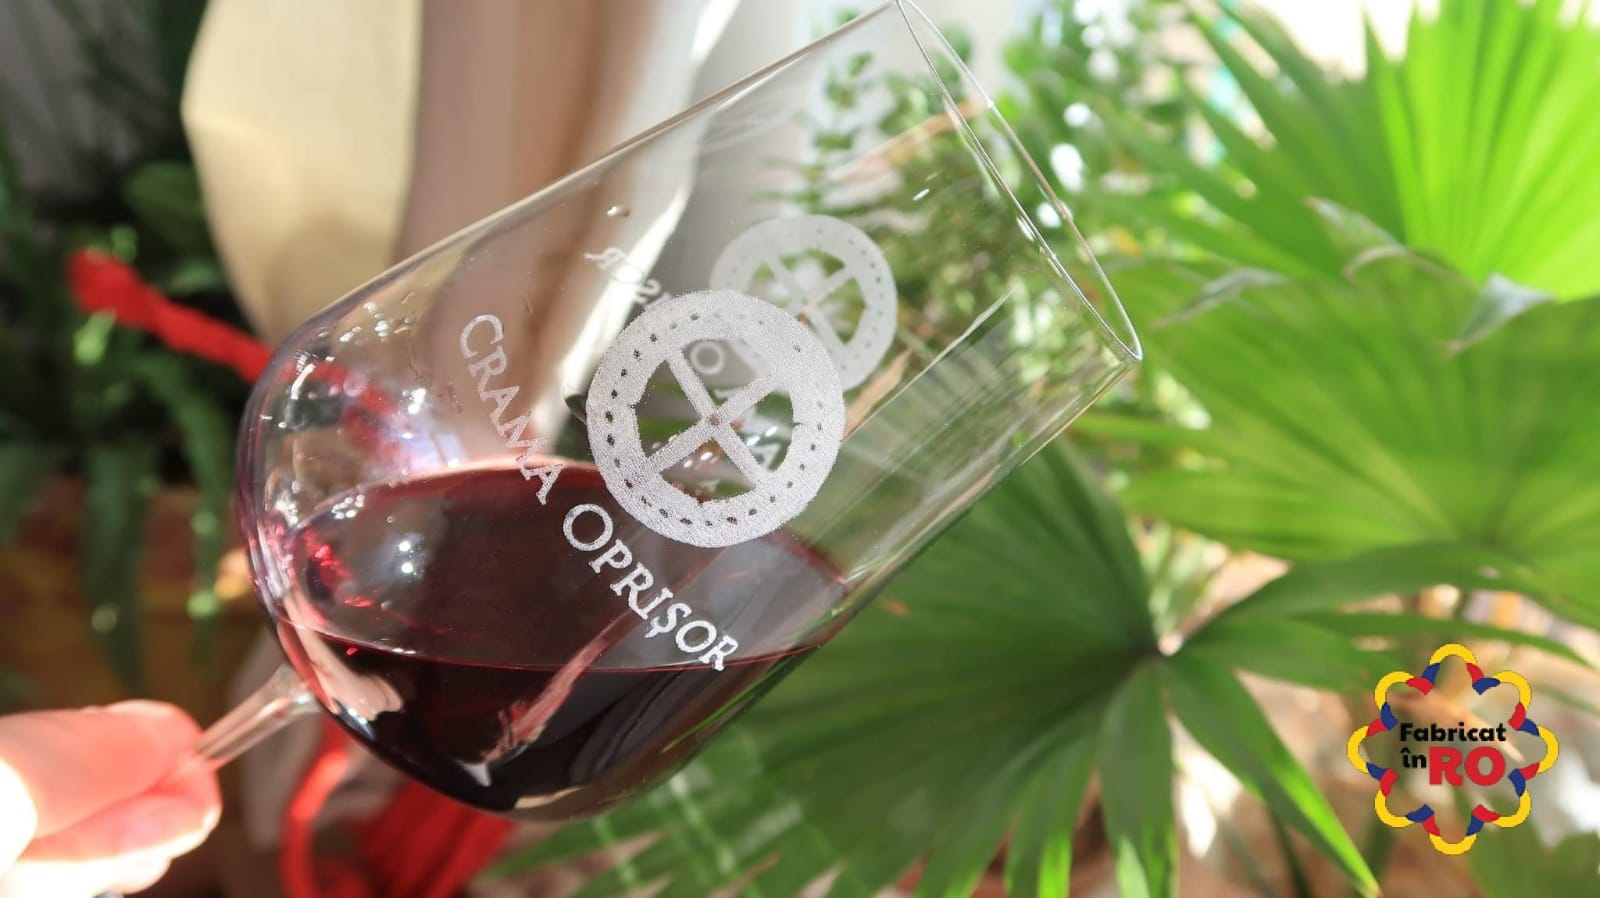 Pentru mesele de sărbători, FabricatinRO îți recomandă 4 vinuri de excepție de la Crama Oprișor!